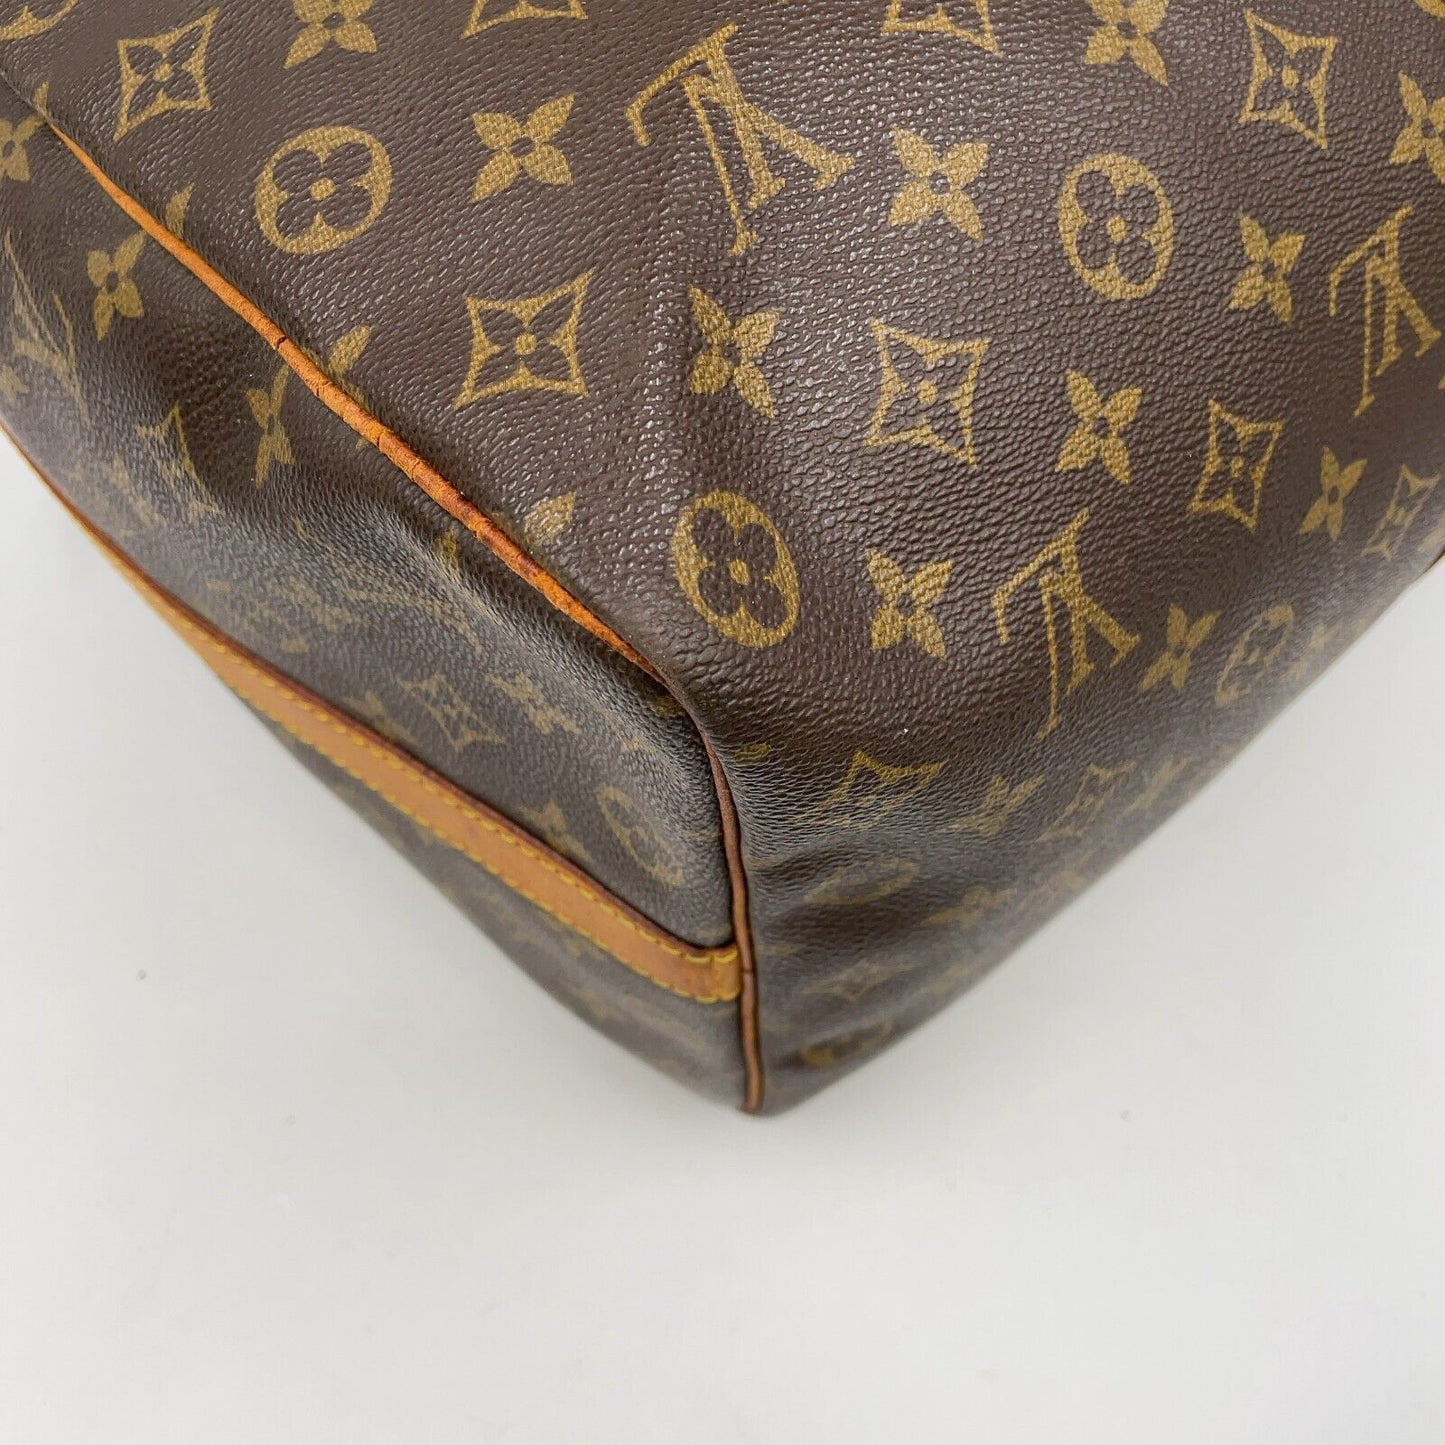 Original/Auth Louis Vuitton - Keepall Bandouliere 50 - Klassisch - Monogramm